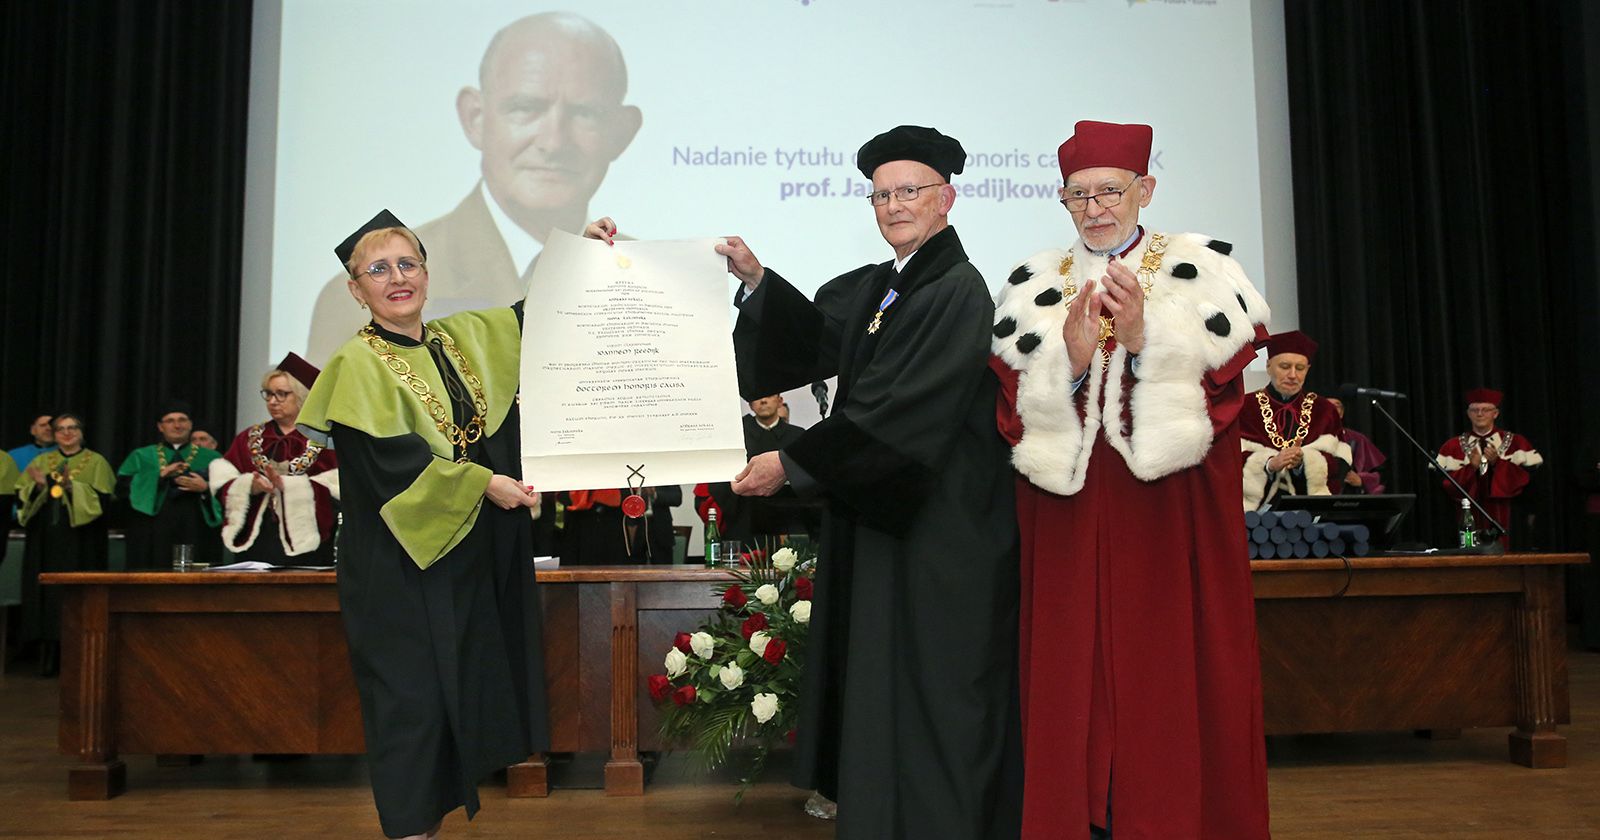 Prof. Jan Reedijk doktorem honoris causa UMK